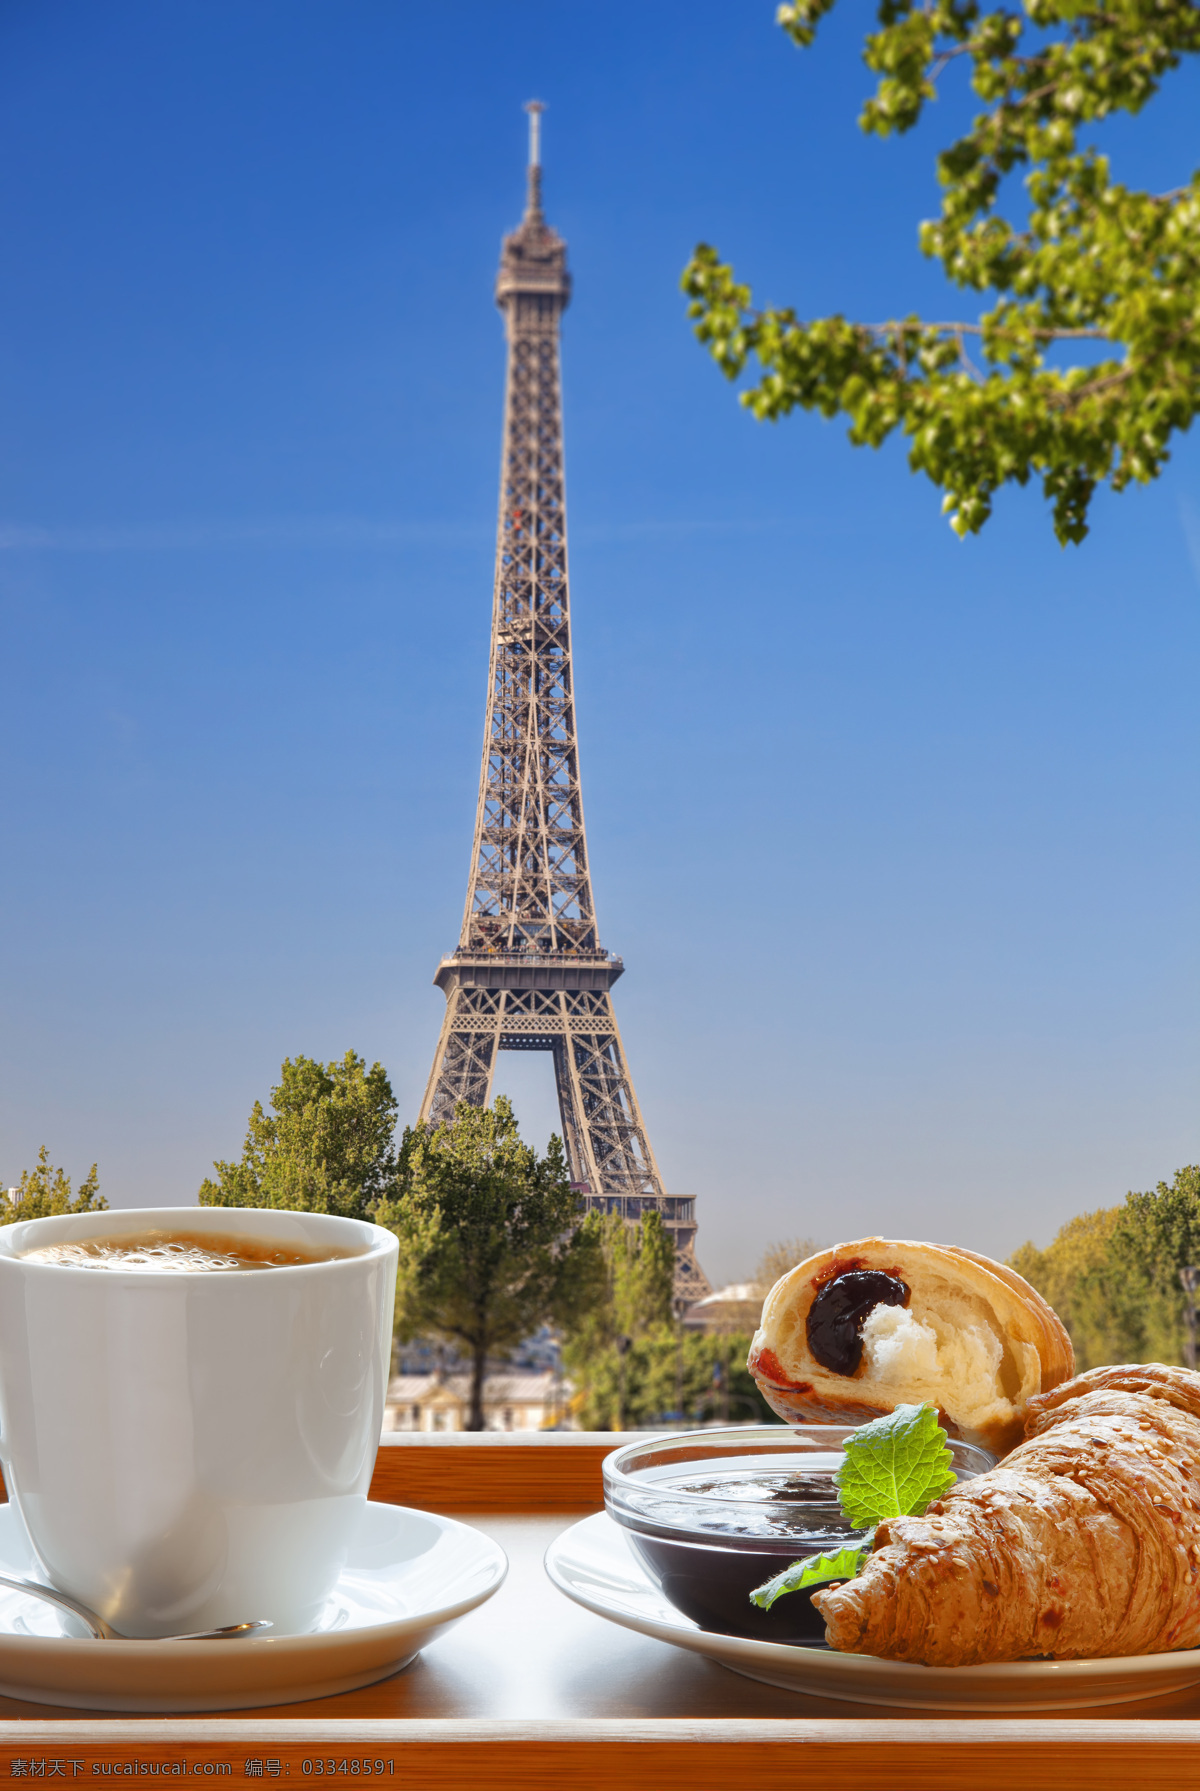 菲尔 铁塔 下 咖啡 面包 酒水饮料 休闲饮品 埃菲尔铁塔 蛋挞 咖啡图片 餐饮美食